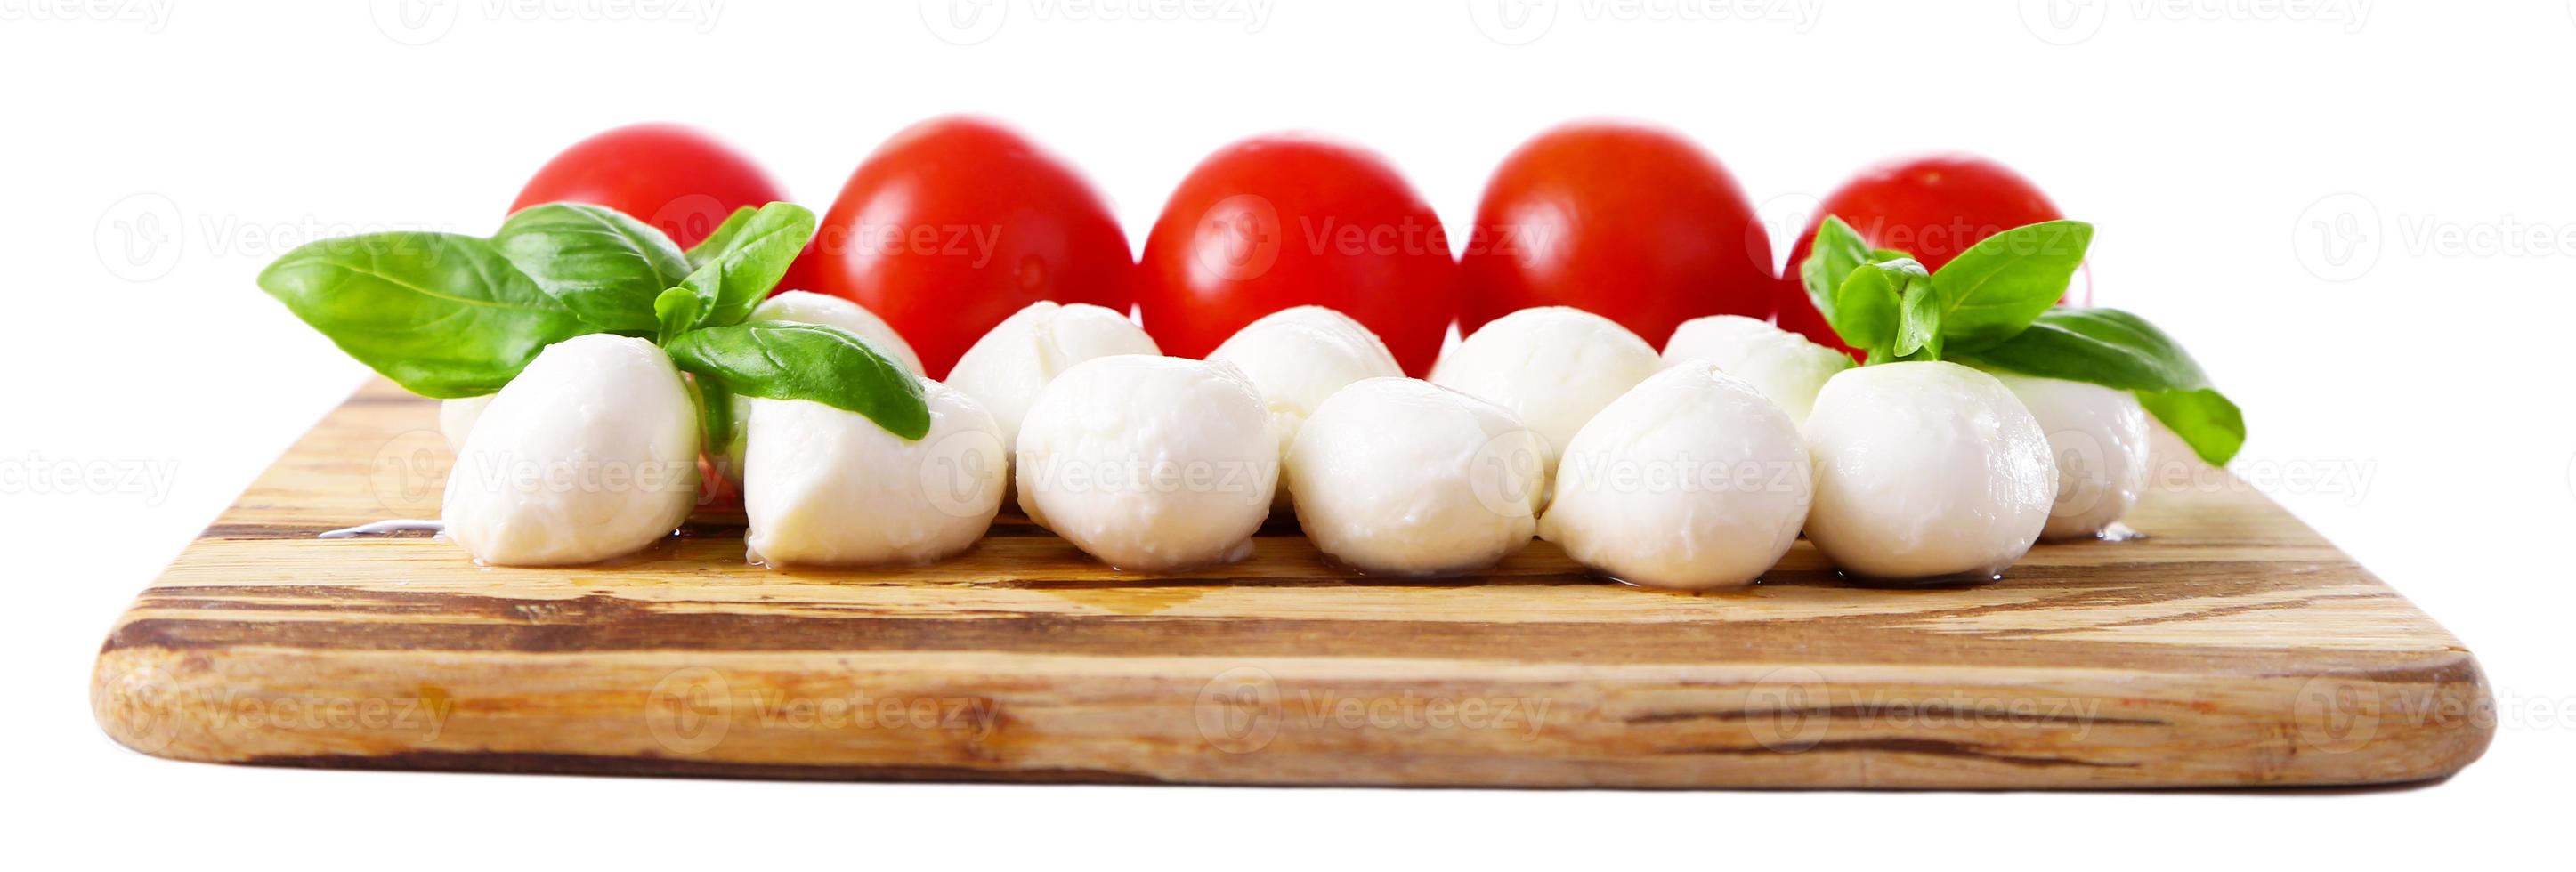 läckra mozzarellaostbollar med basilika och röda tomater foto